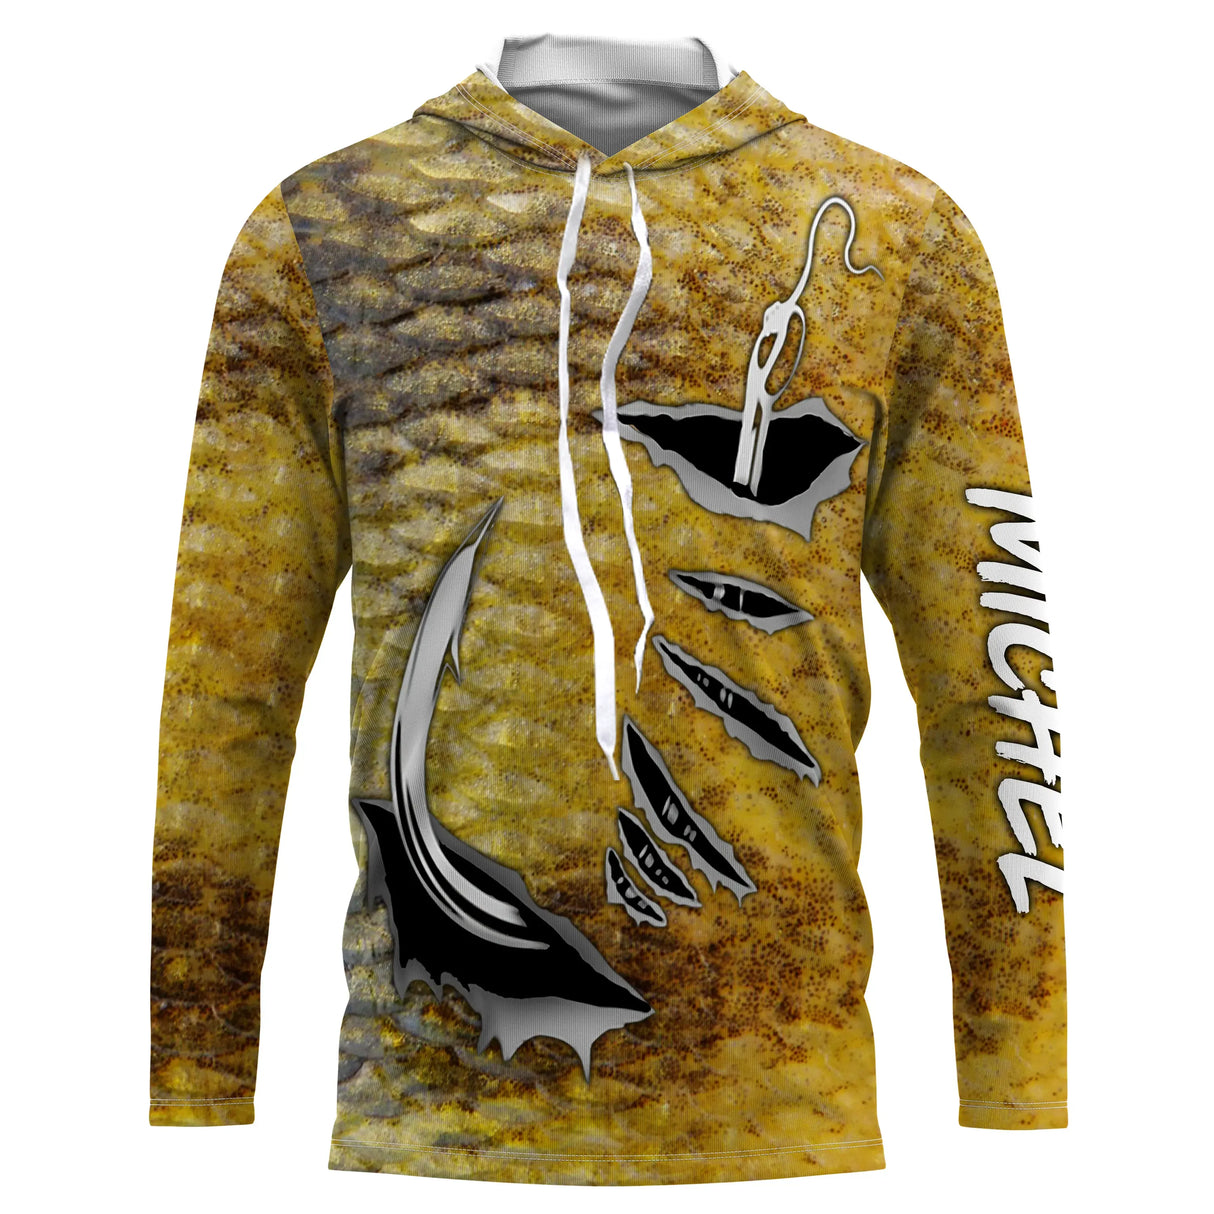 T-shirt personalizzata in pelle di persico, ami da pesca, regalo originale per pescatori - CT28072218